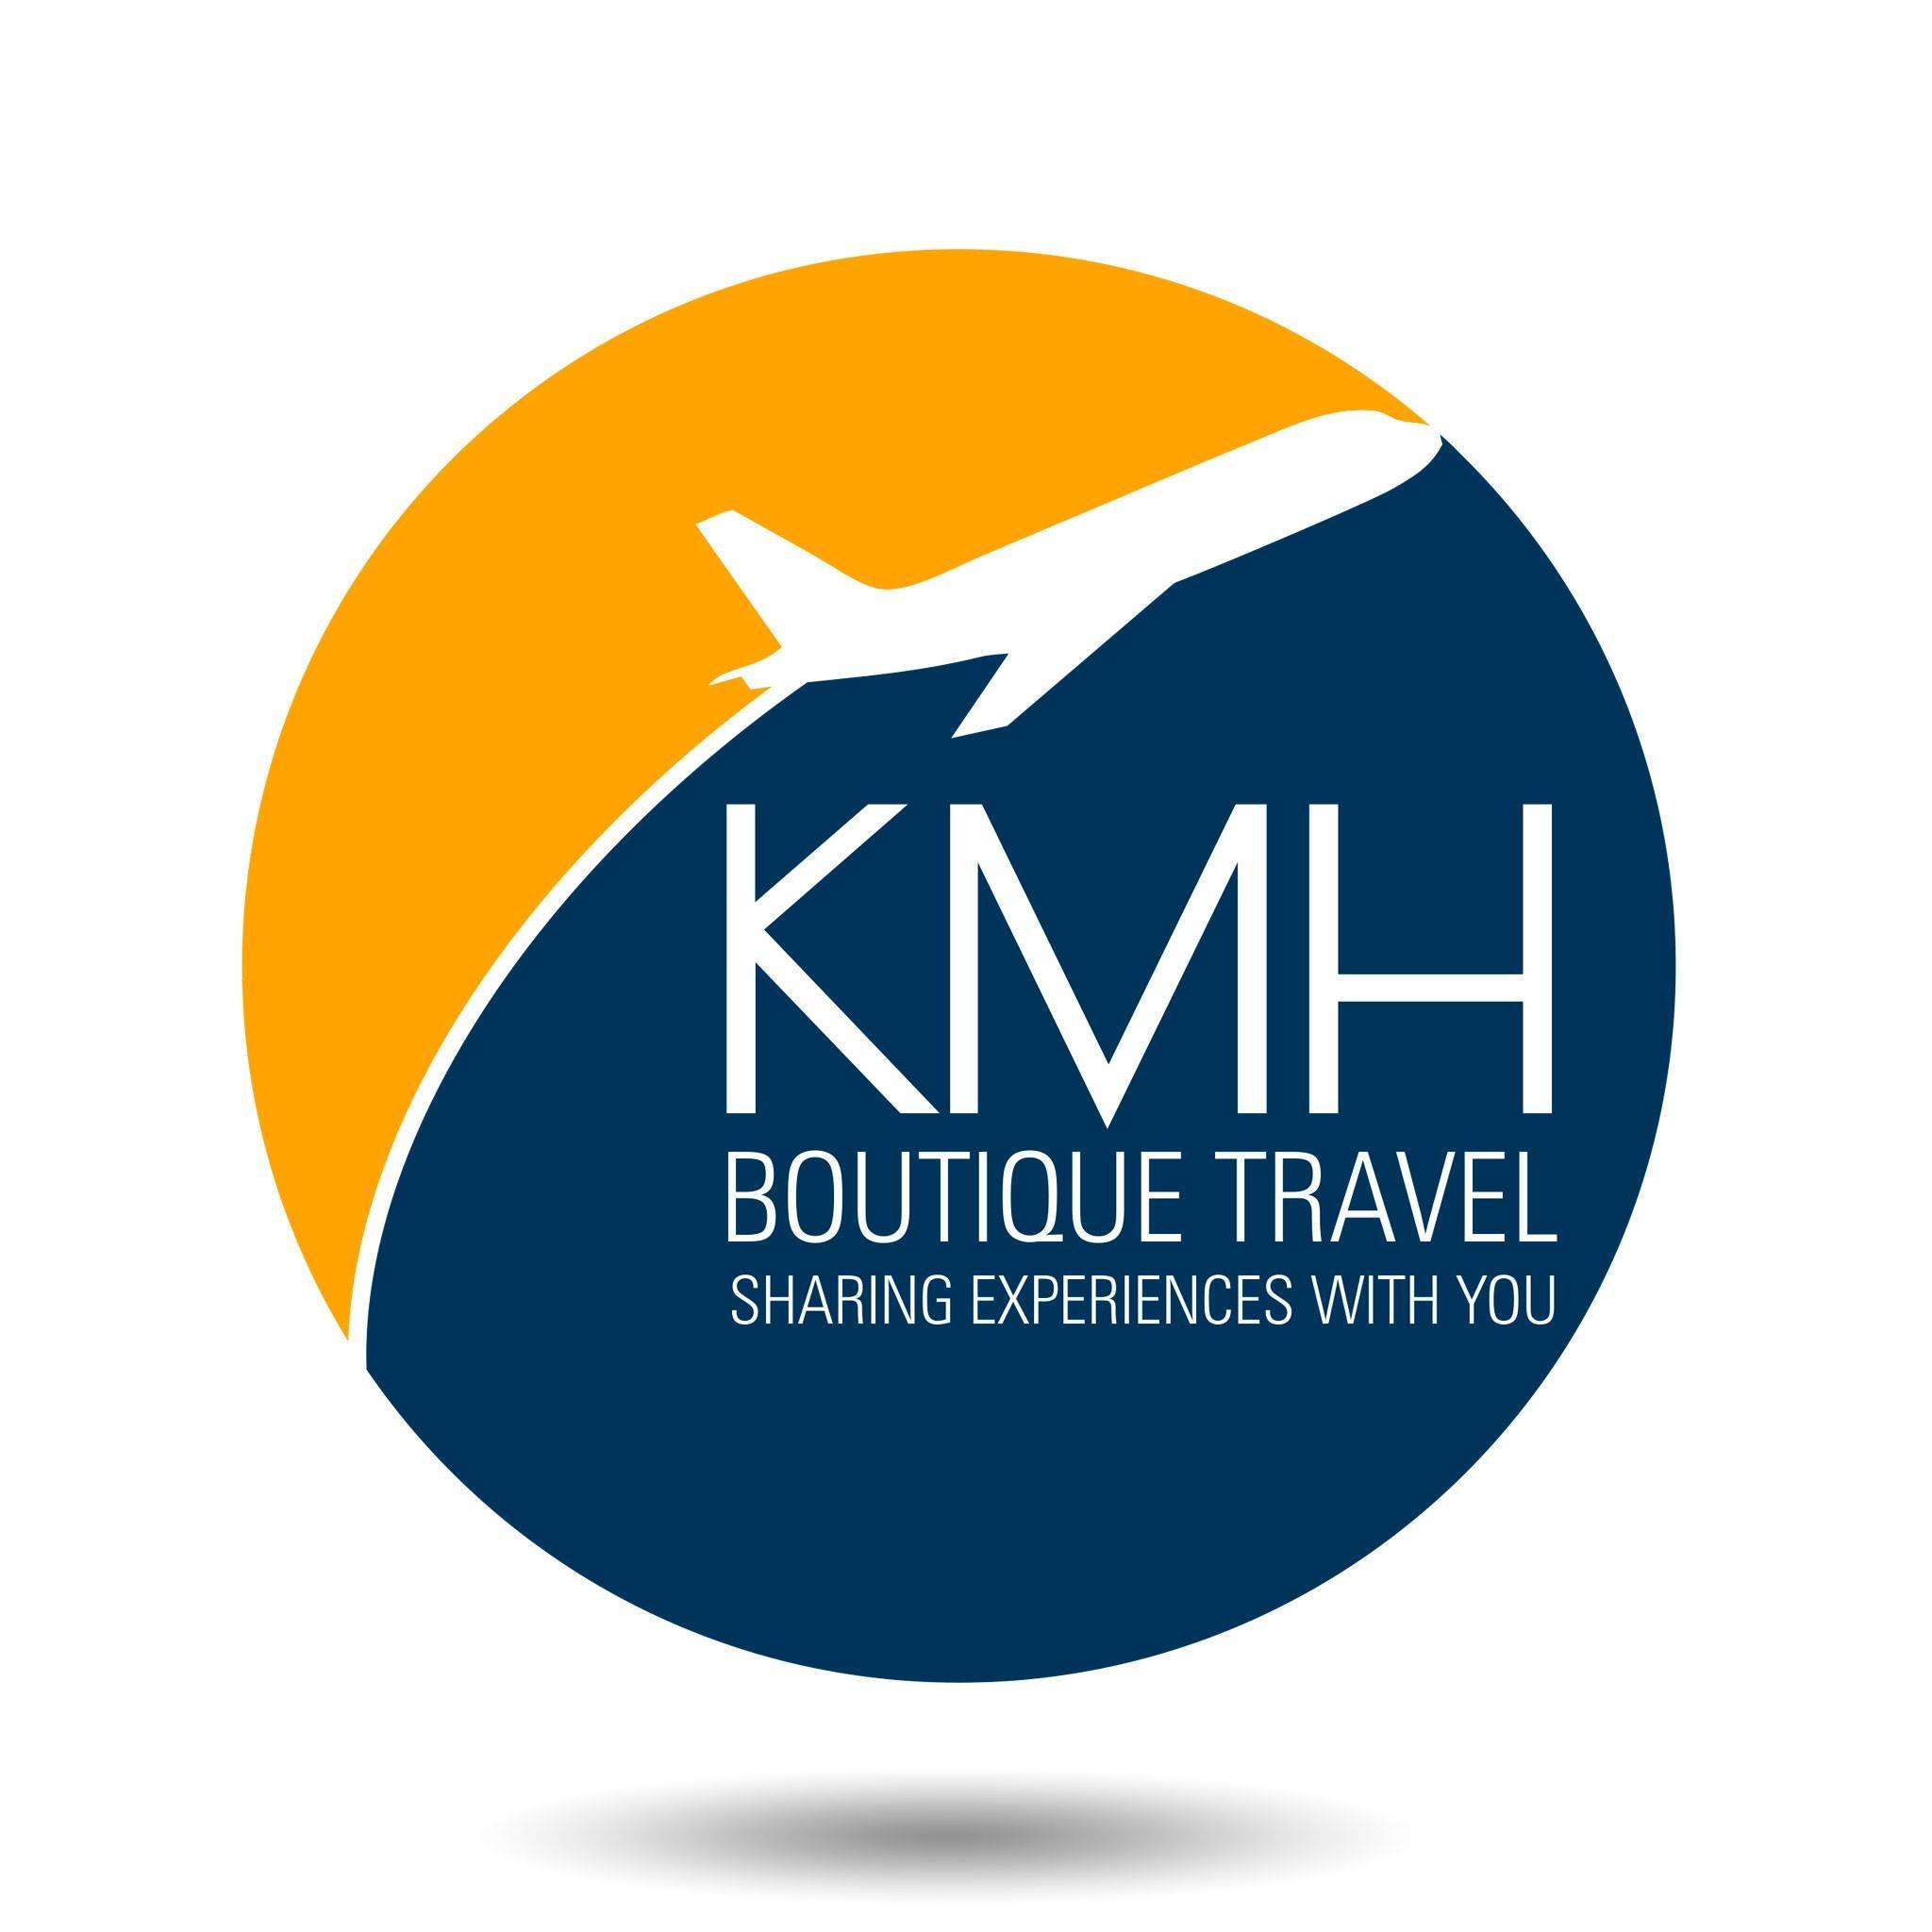 Agencia de viajes KMH Boutique Travel